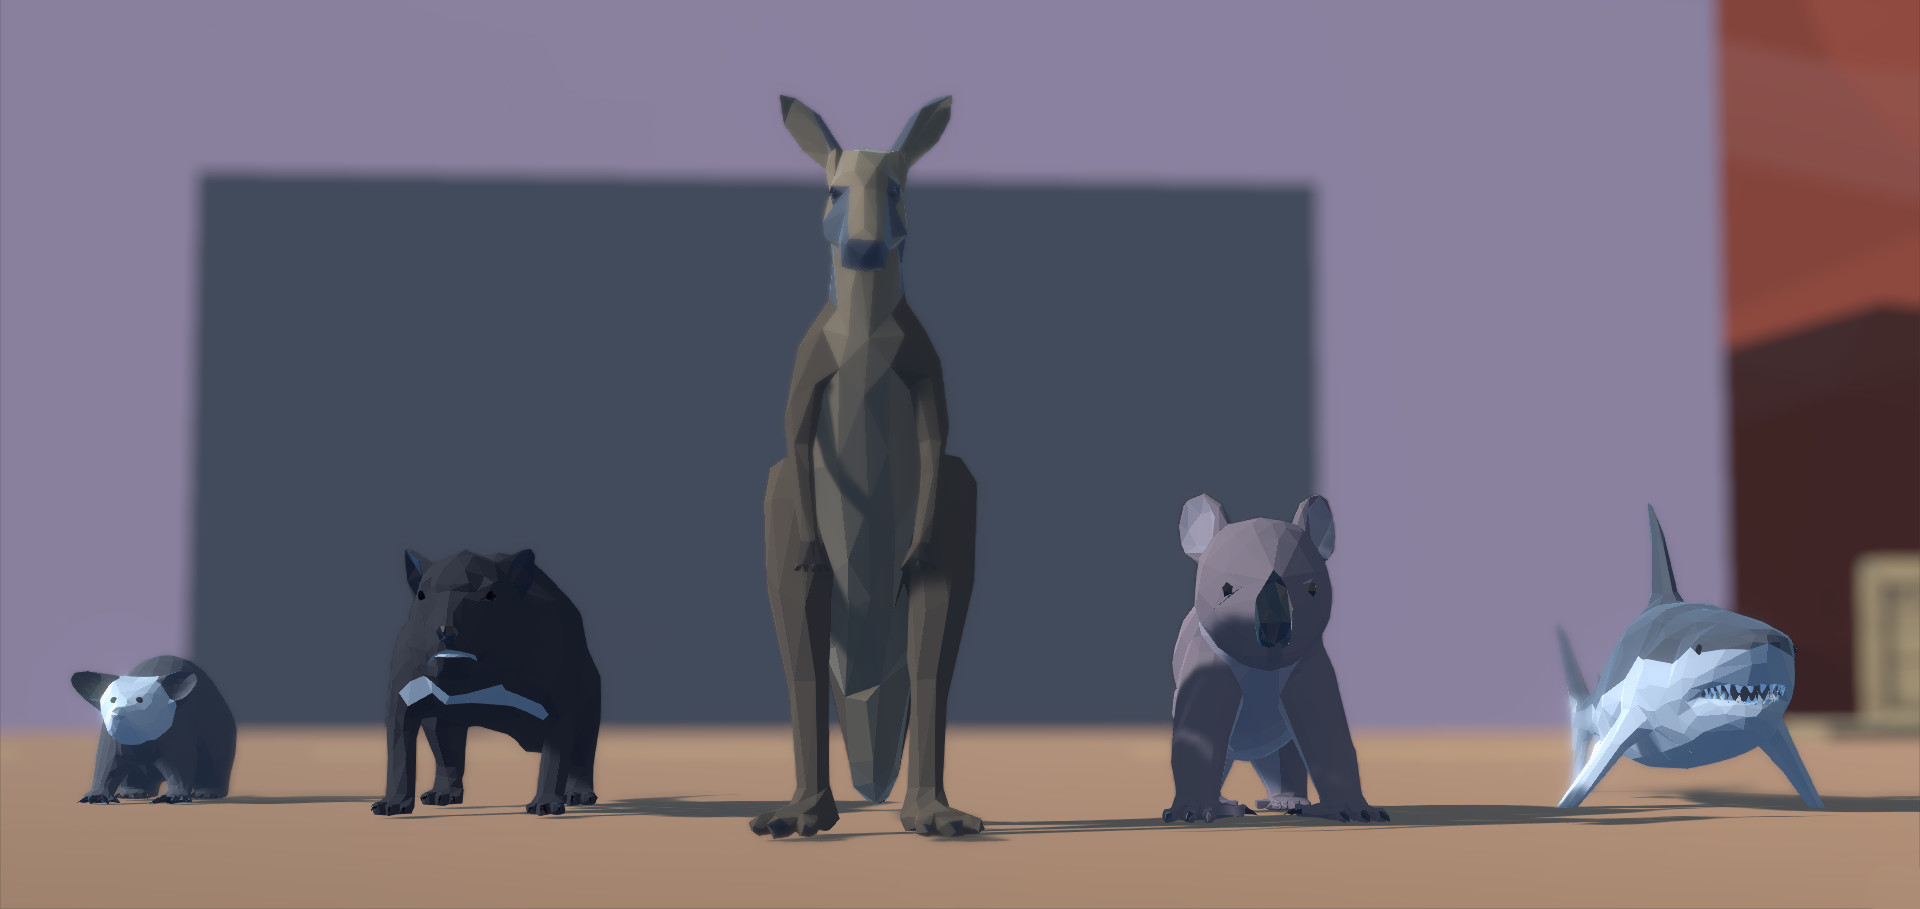 Animal Fight Club: Australia Export on Steam